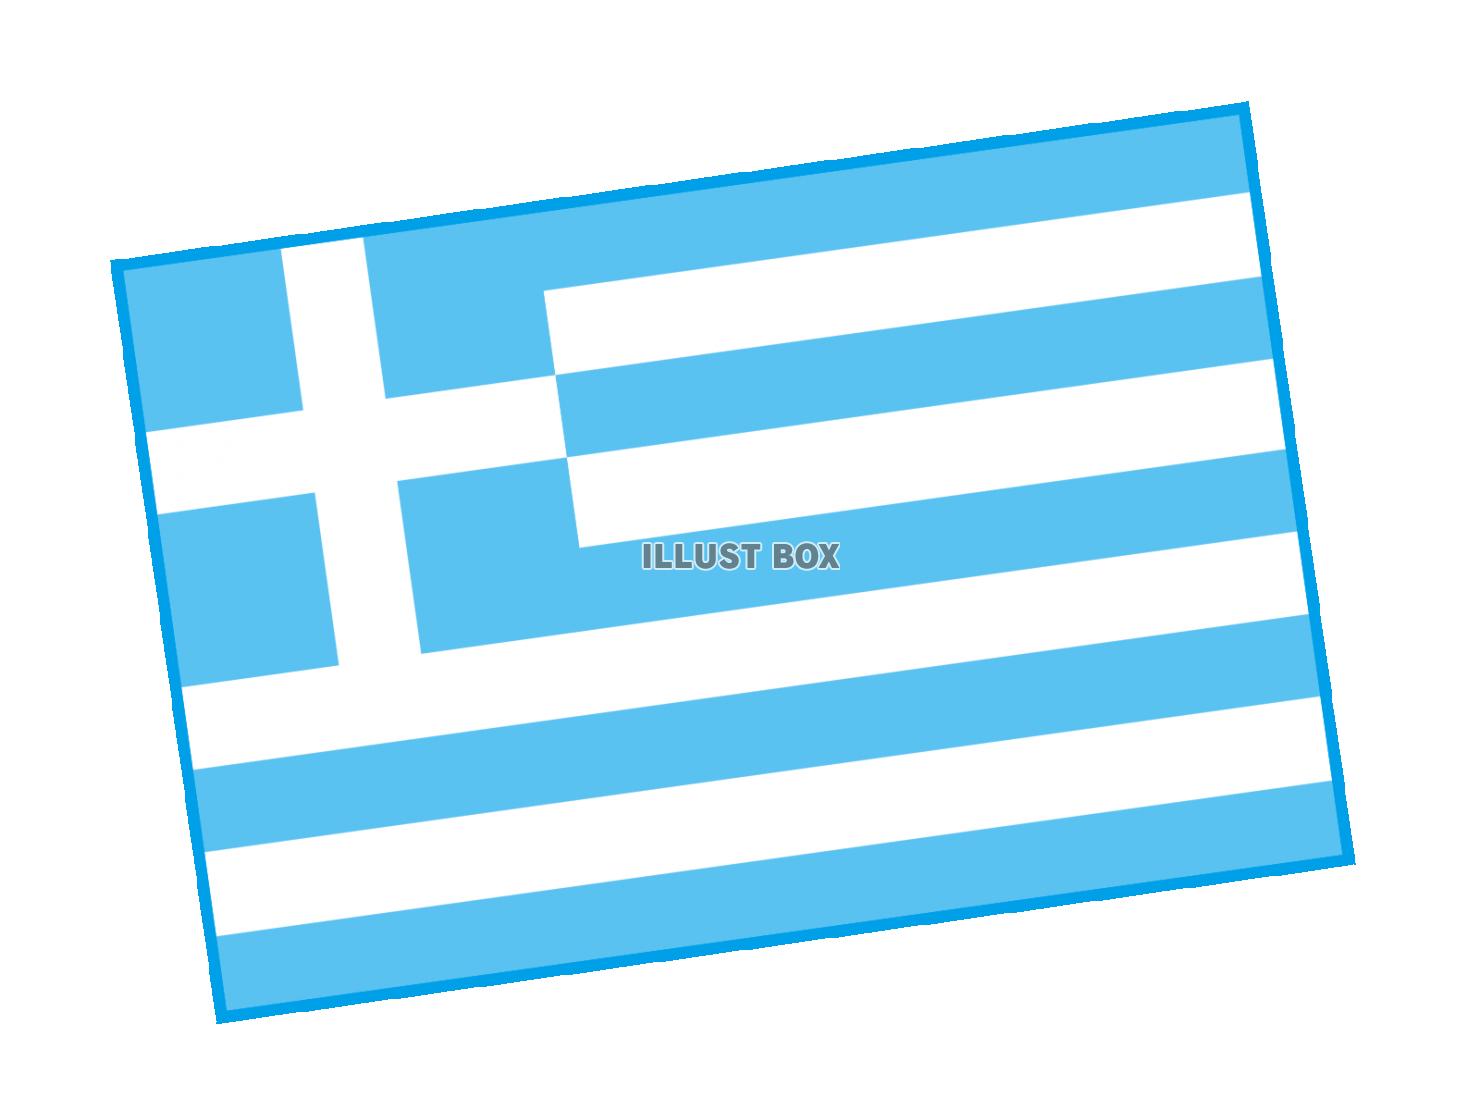 ギリシャ　国旗